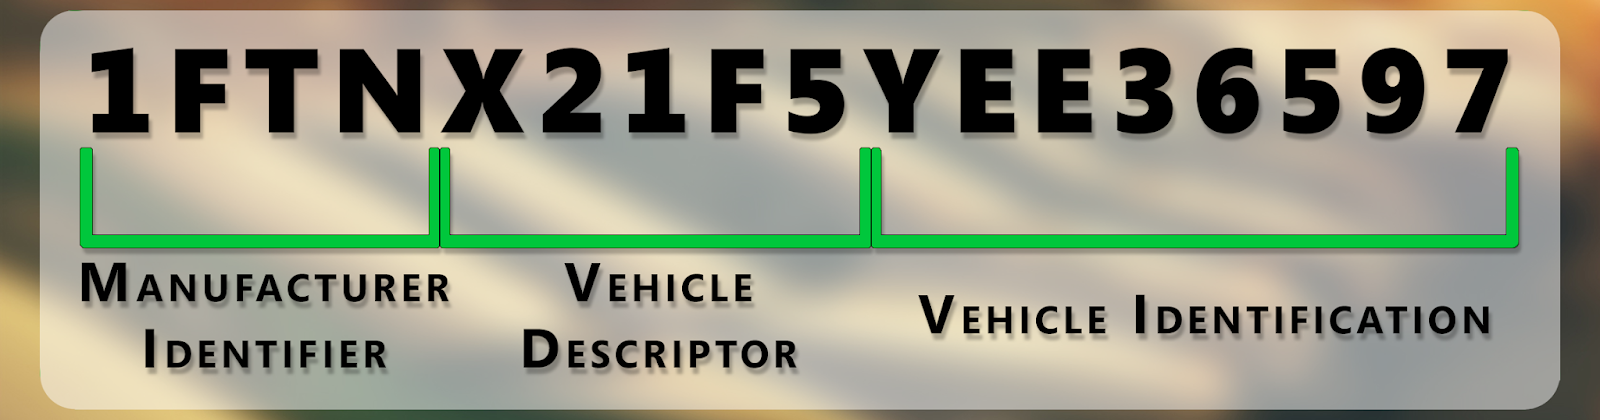 Vehicle_Identifier_Code